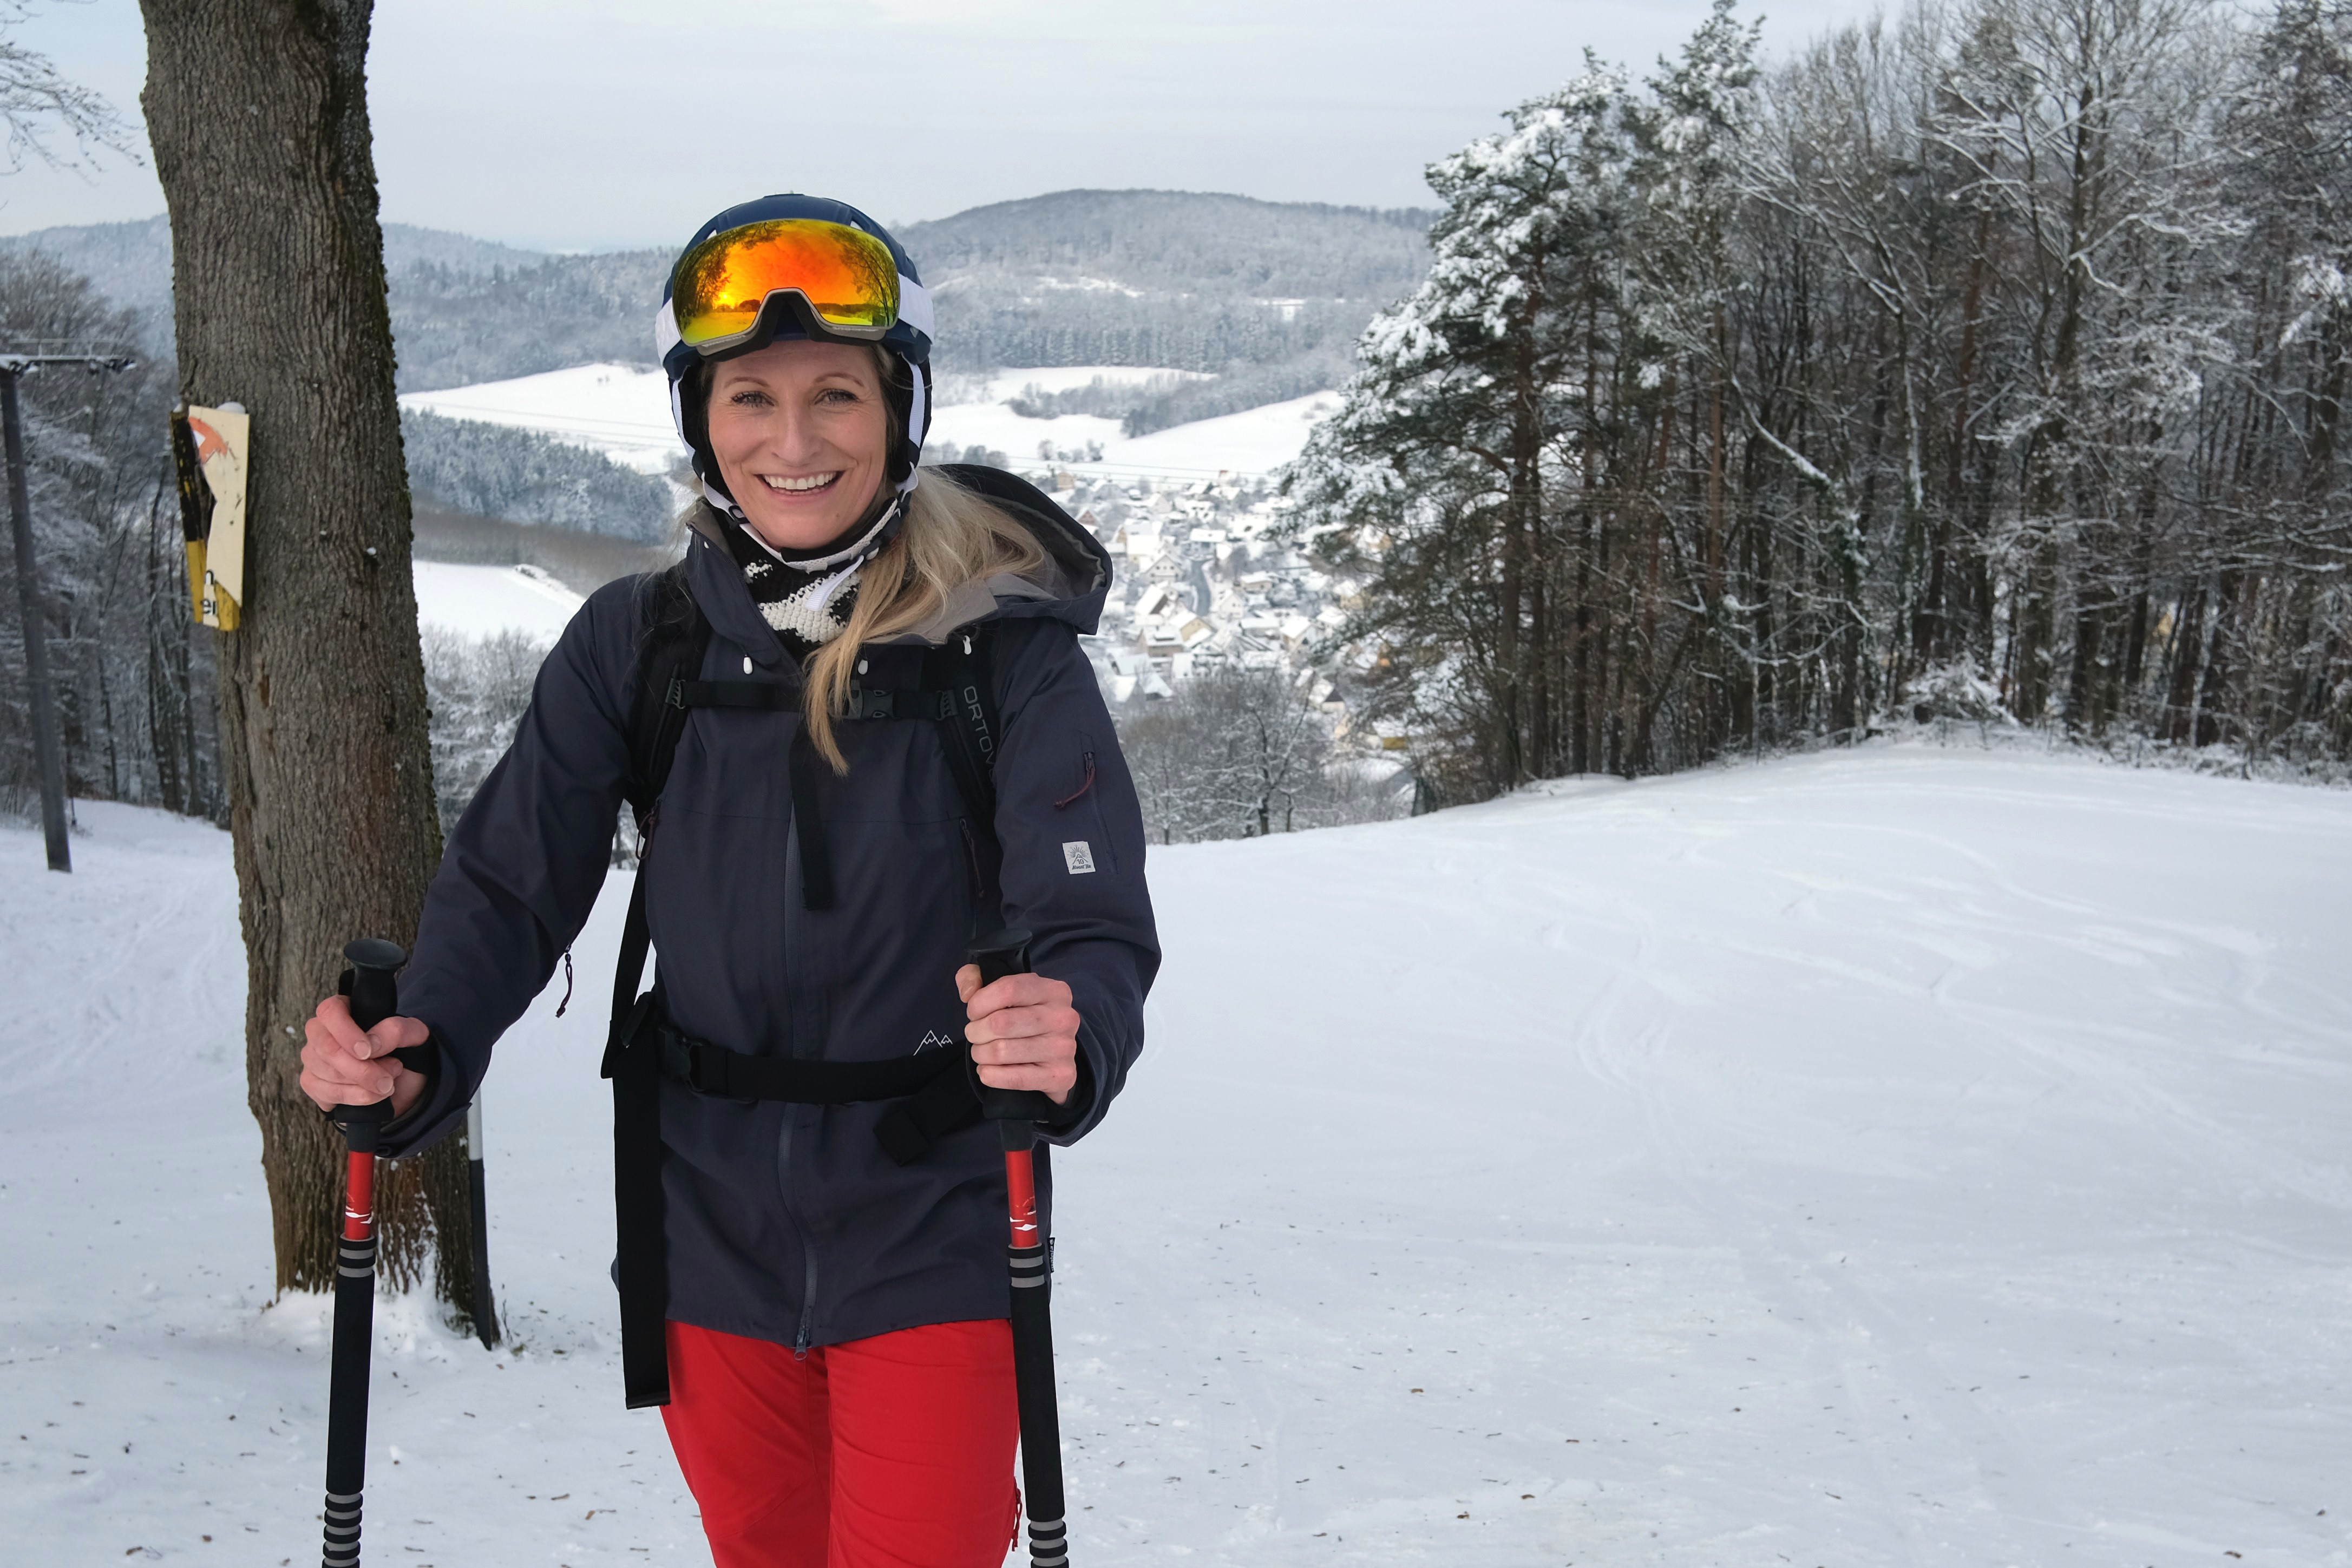 Am Rothenberg gibt es zwei Skilifte, die je 240 Meter lang sind. Der Rodelhang ist 300 m lang.
                 title=